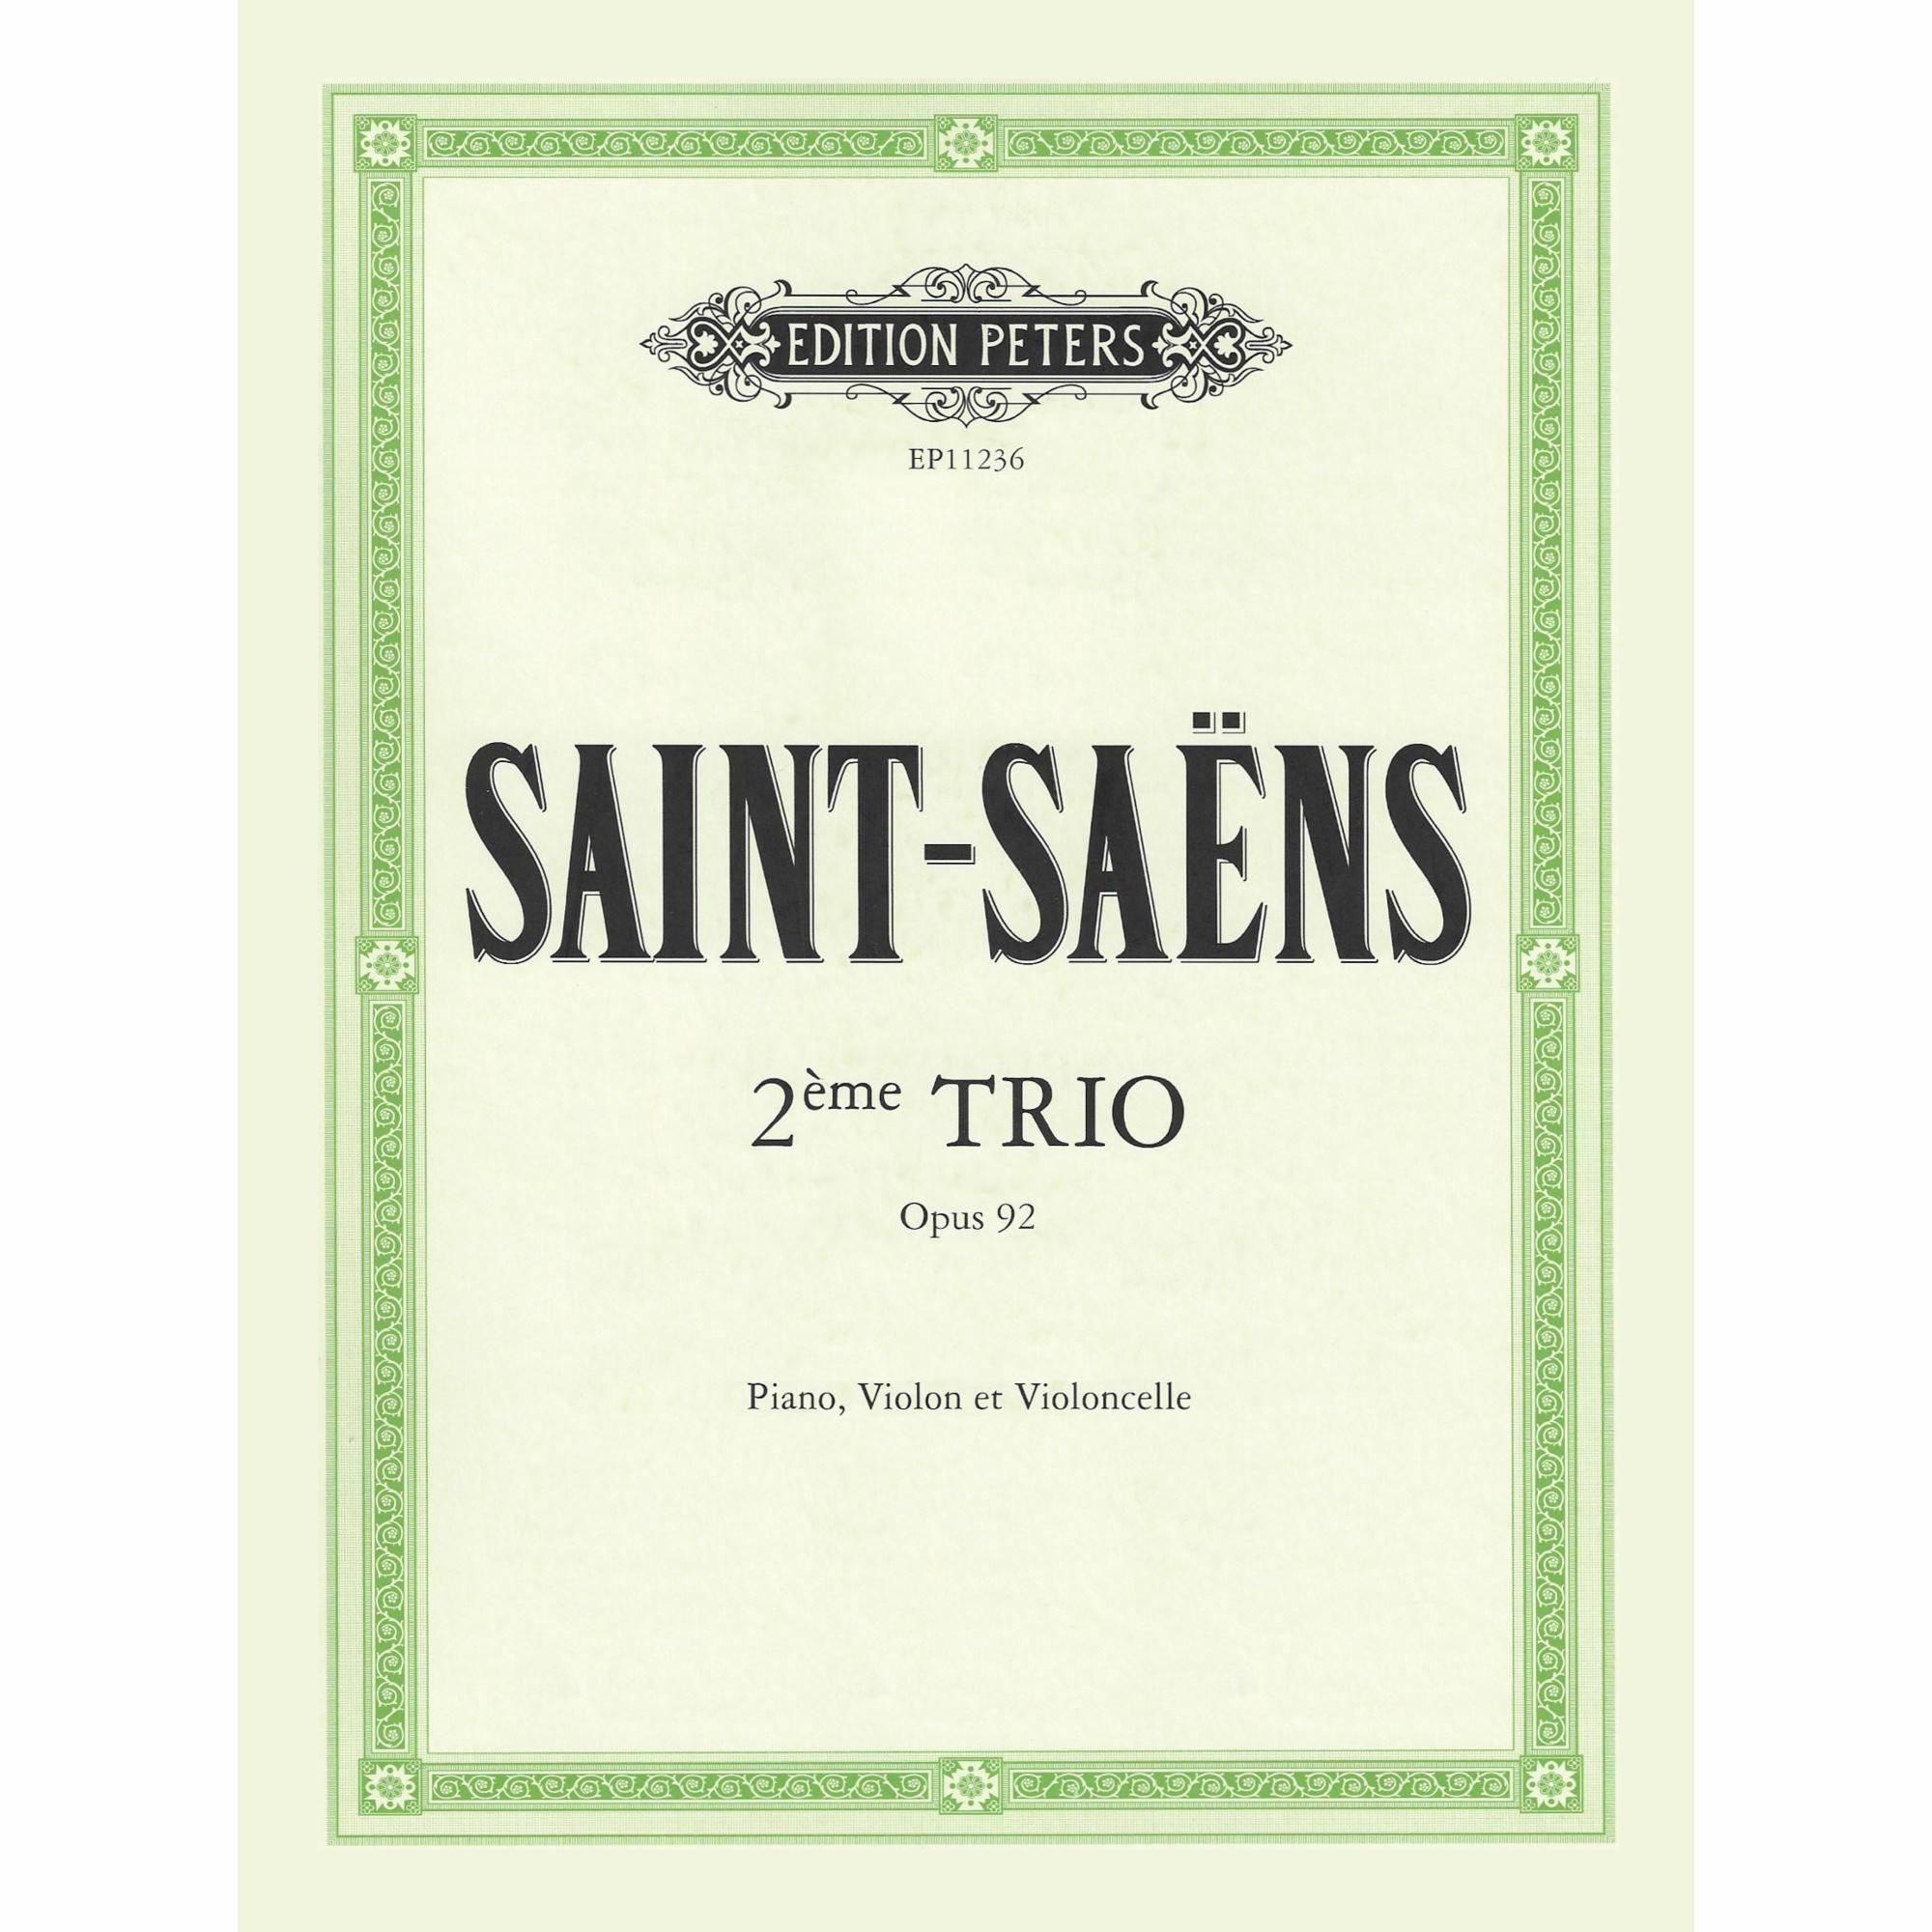 Saint-Saens -- Second Piano Trio, Op. 92